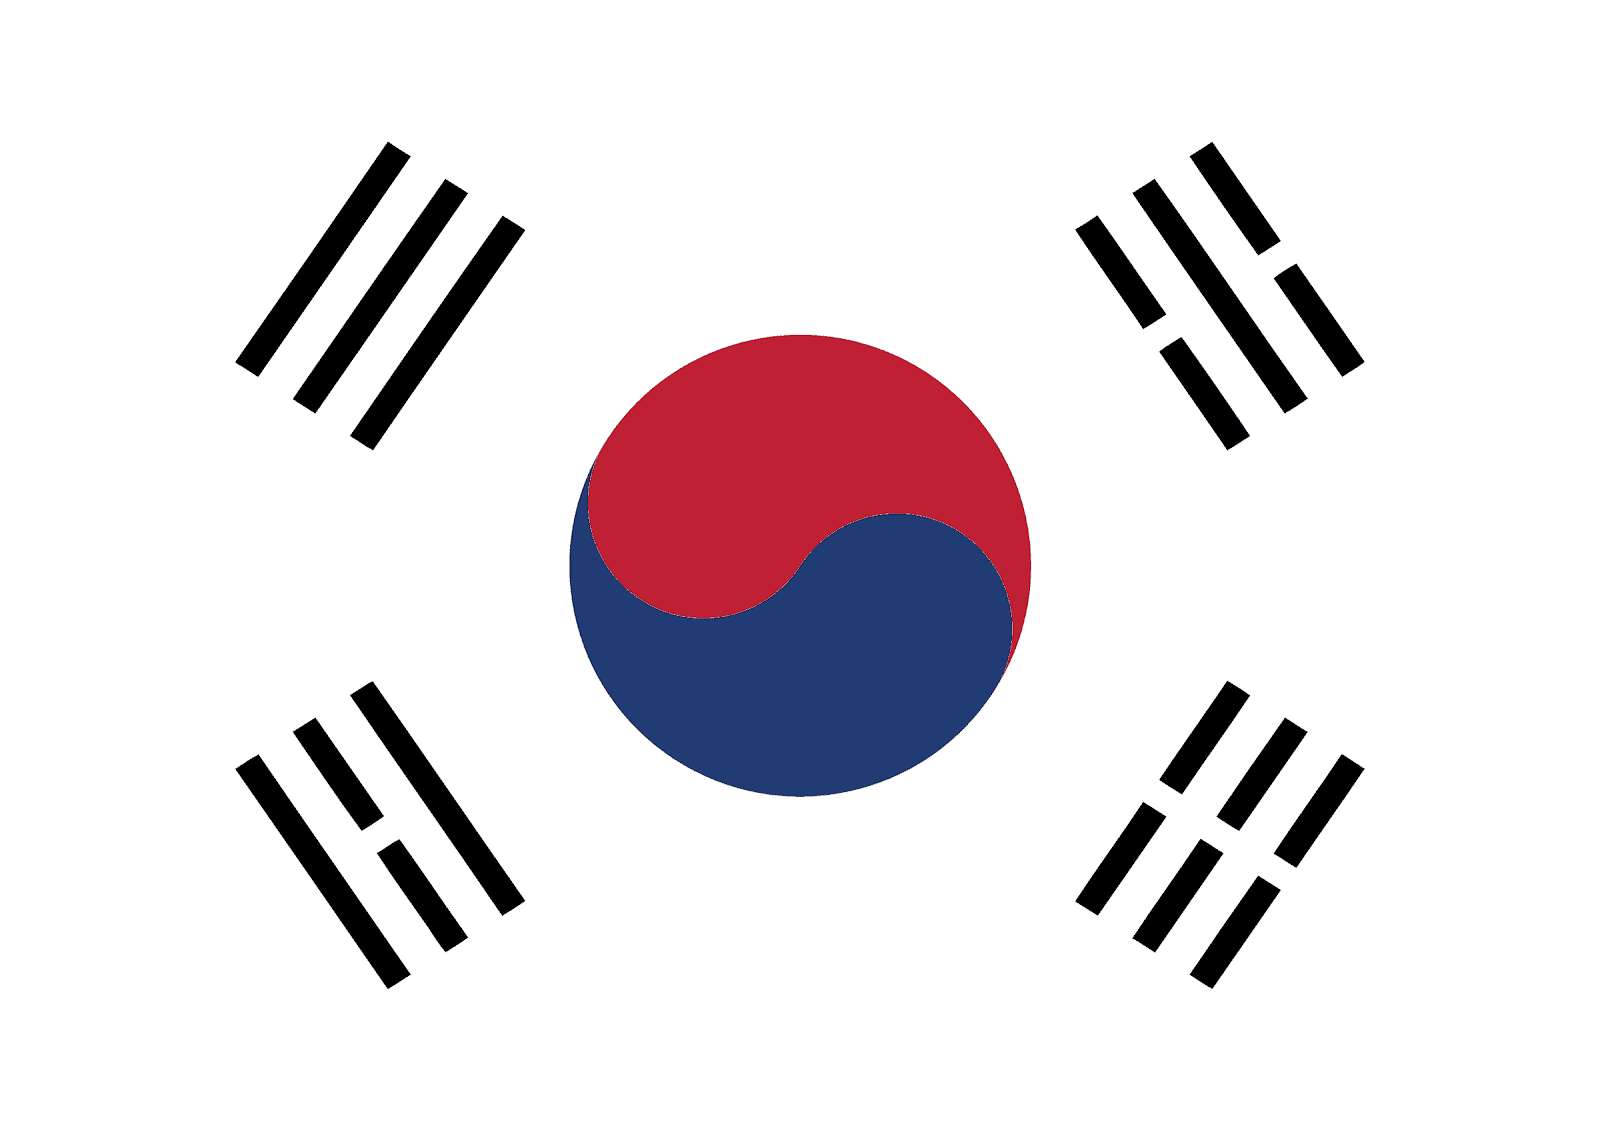 Corea quốc kì rompecabezas en línea